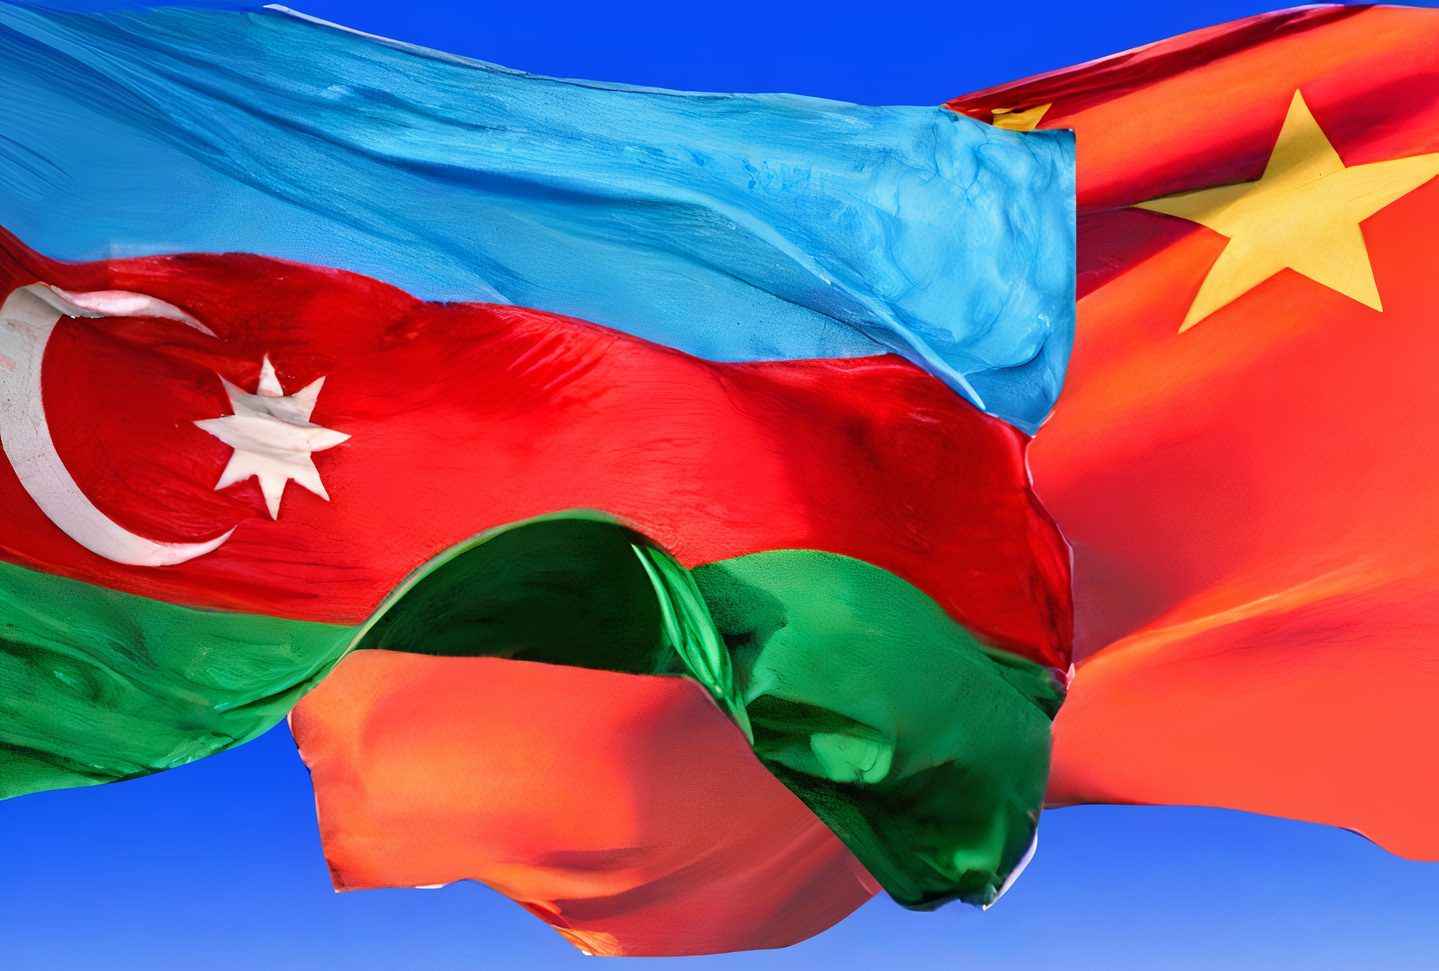 Azerbaijan-China relation stems from common values